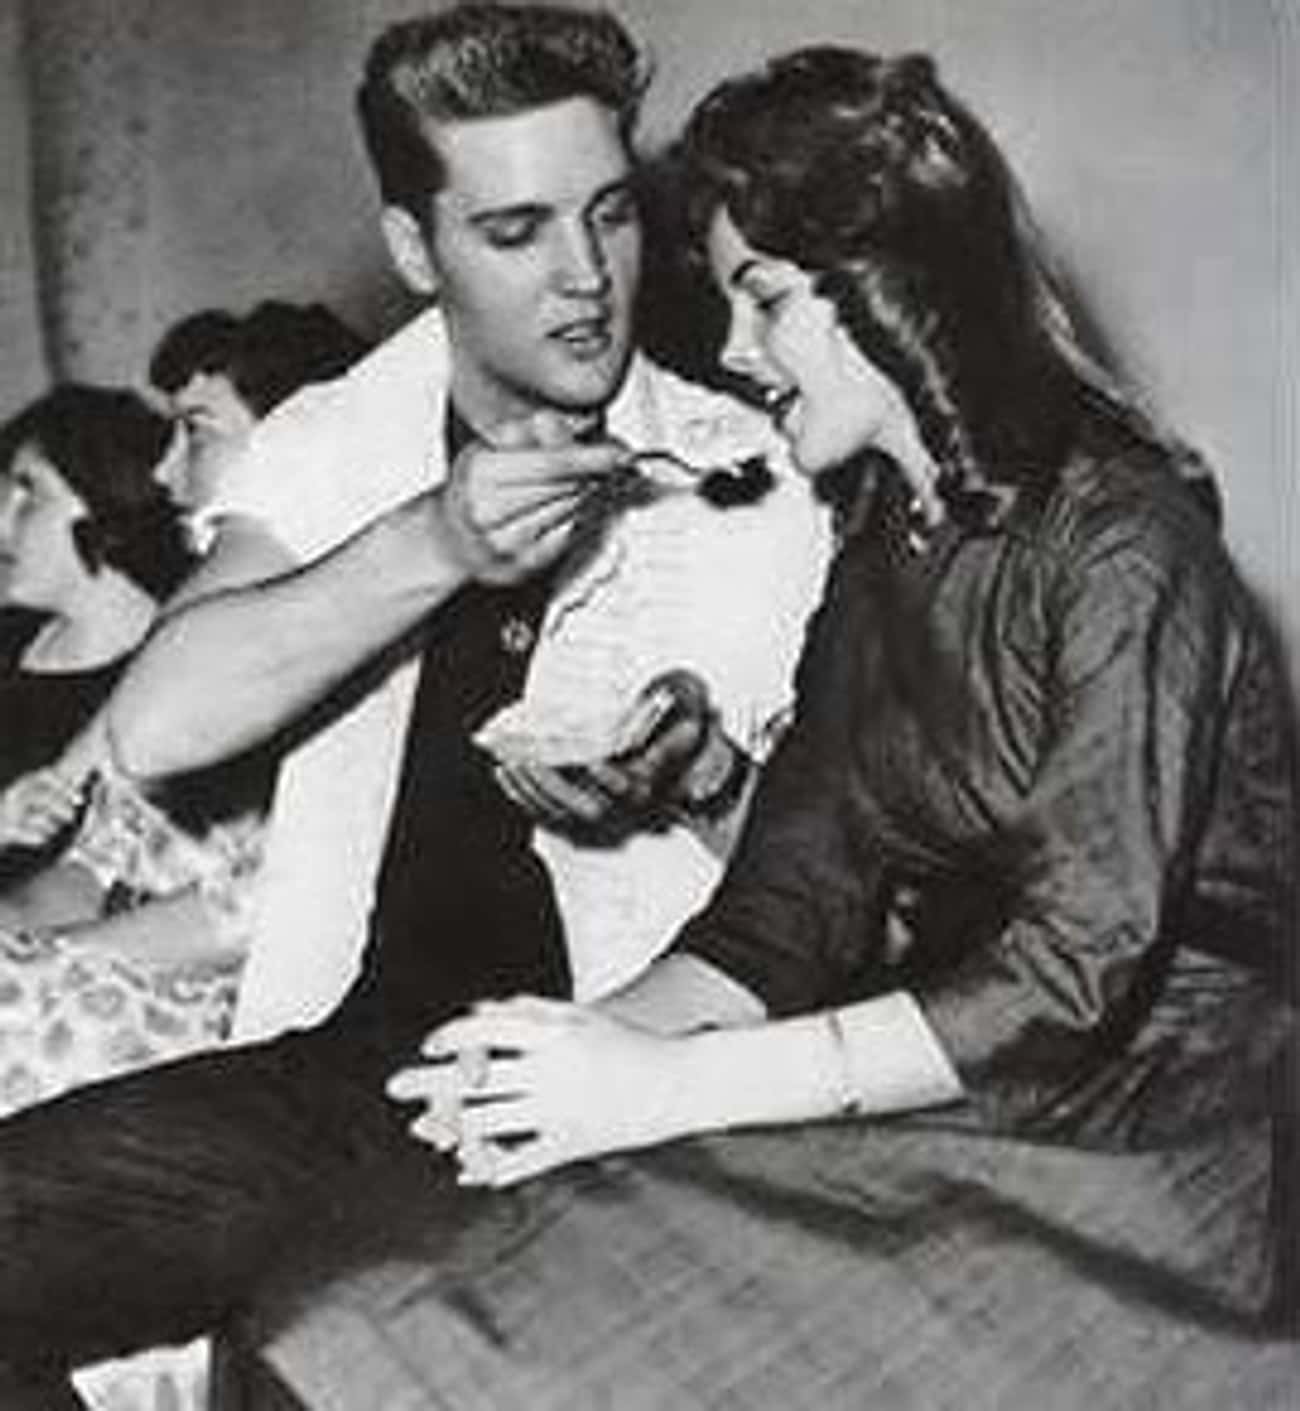 '60s Priscilla Presley with Elvis Presley